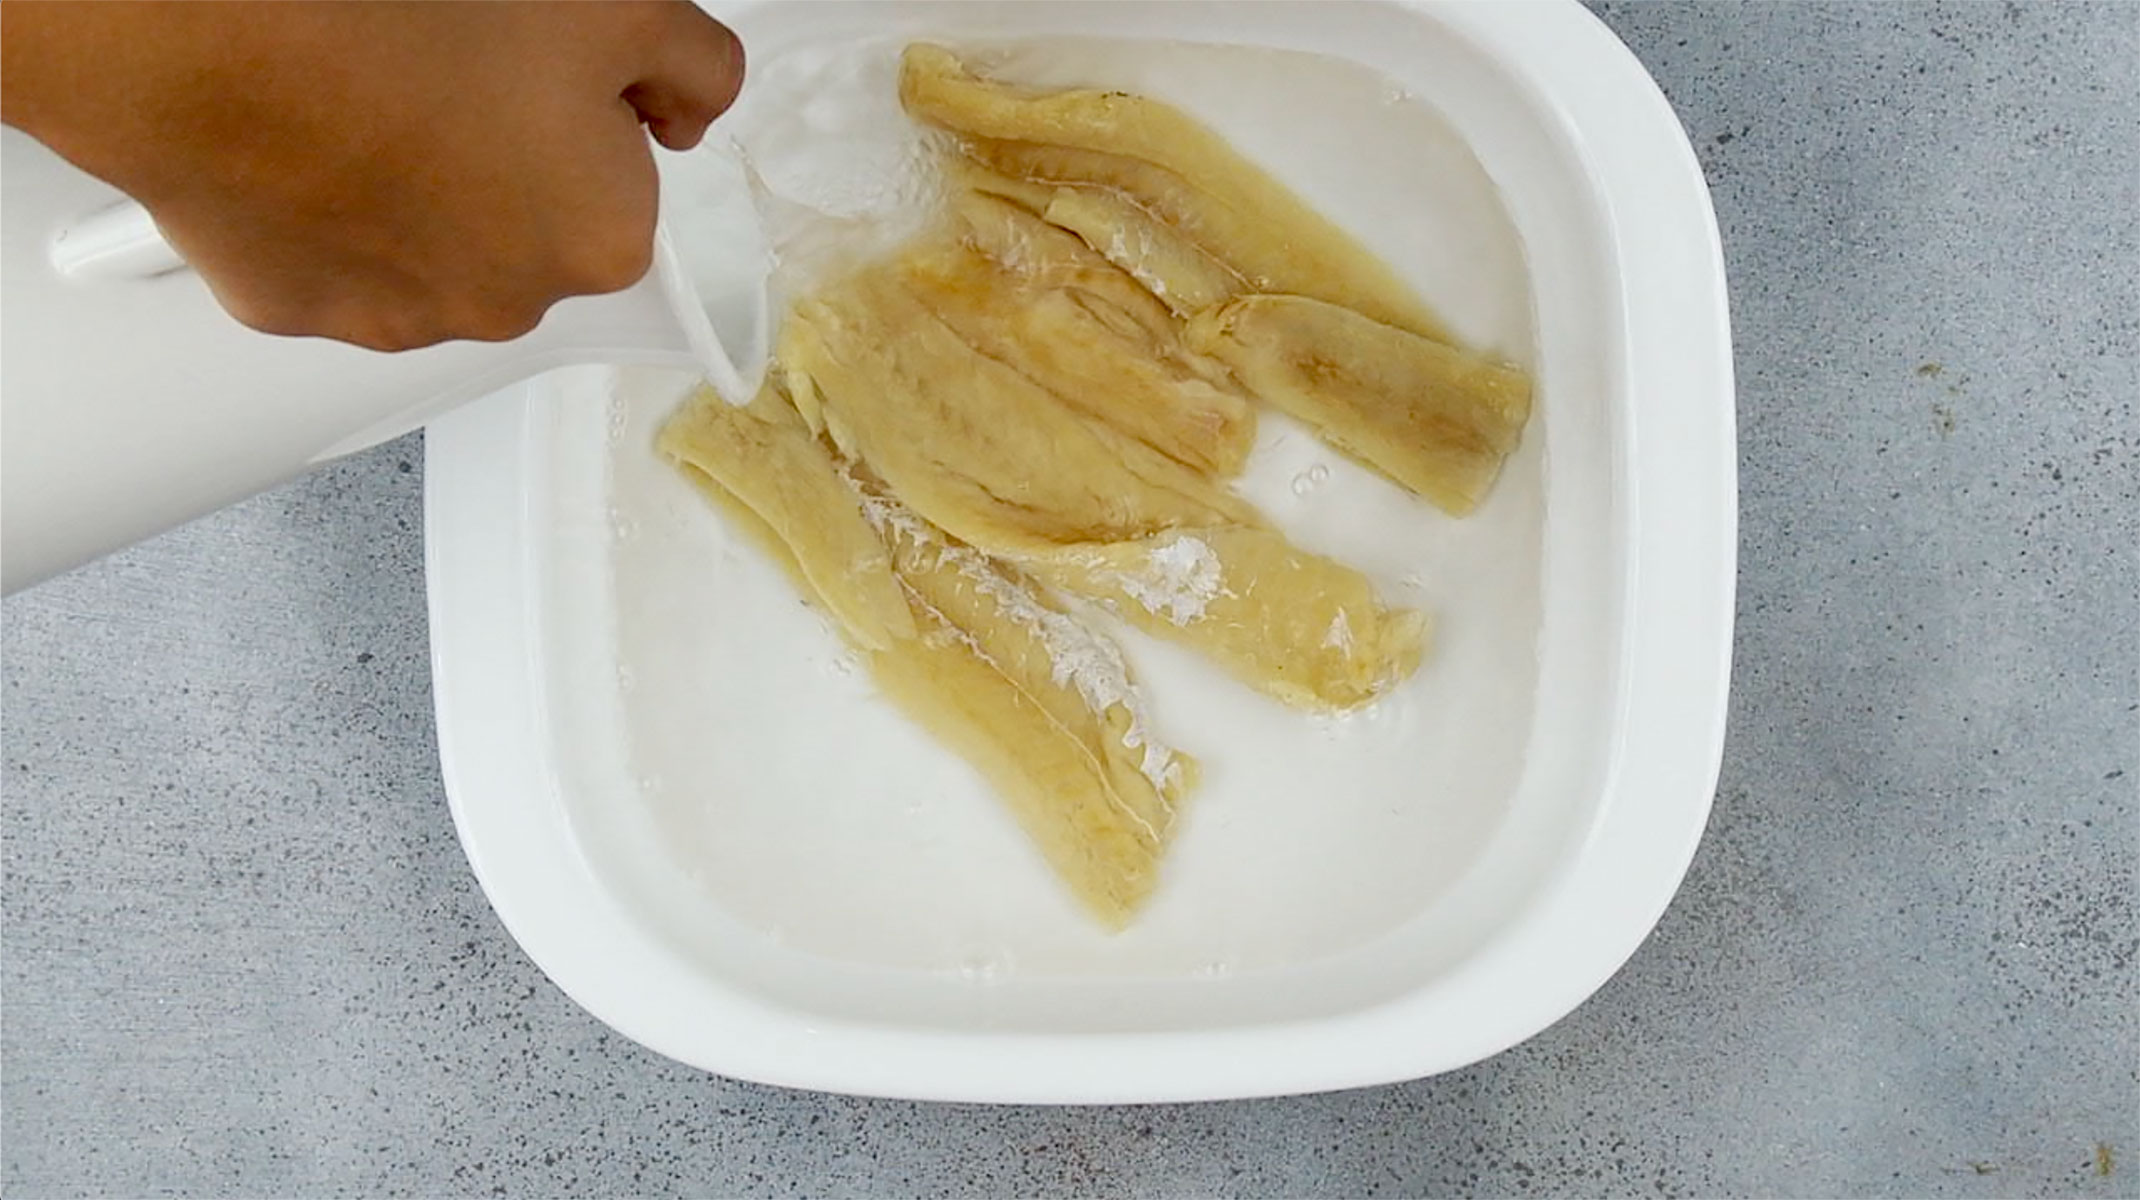 Soaking codfish in water